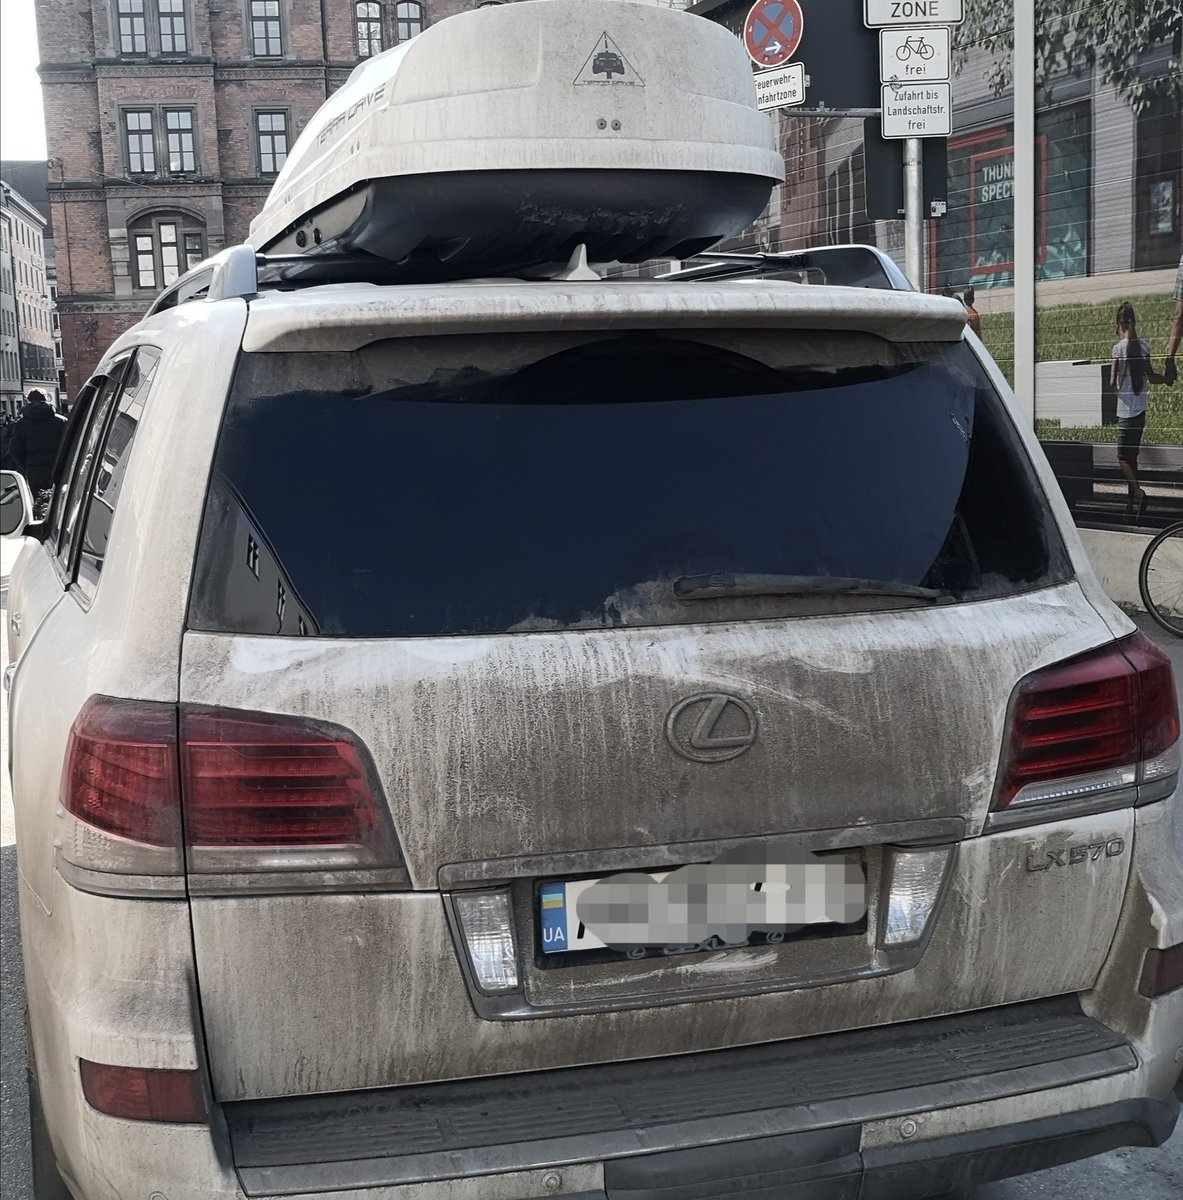 #dummeautos gibt es offenbar auch in der Ukraine. In der Feuerwehranfahrt geparkt, um 'nur kurz' beim Dallmayr einzukaufen. Meine Spendenbereitschaft bekommt gerade einen Knick.